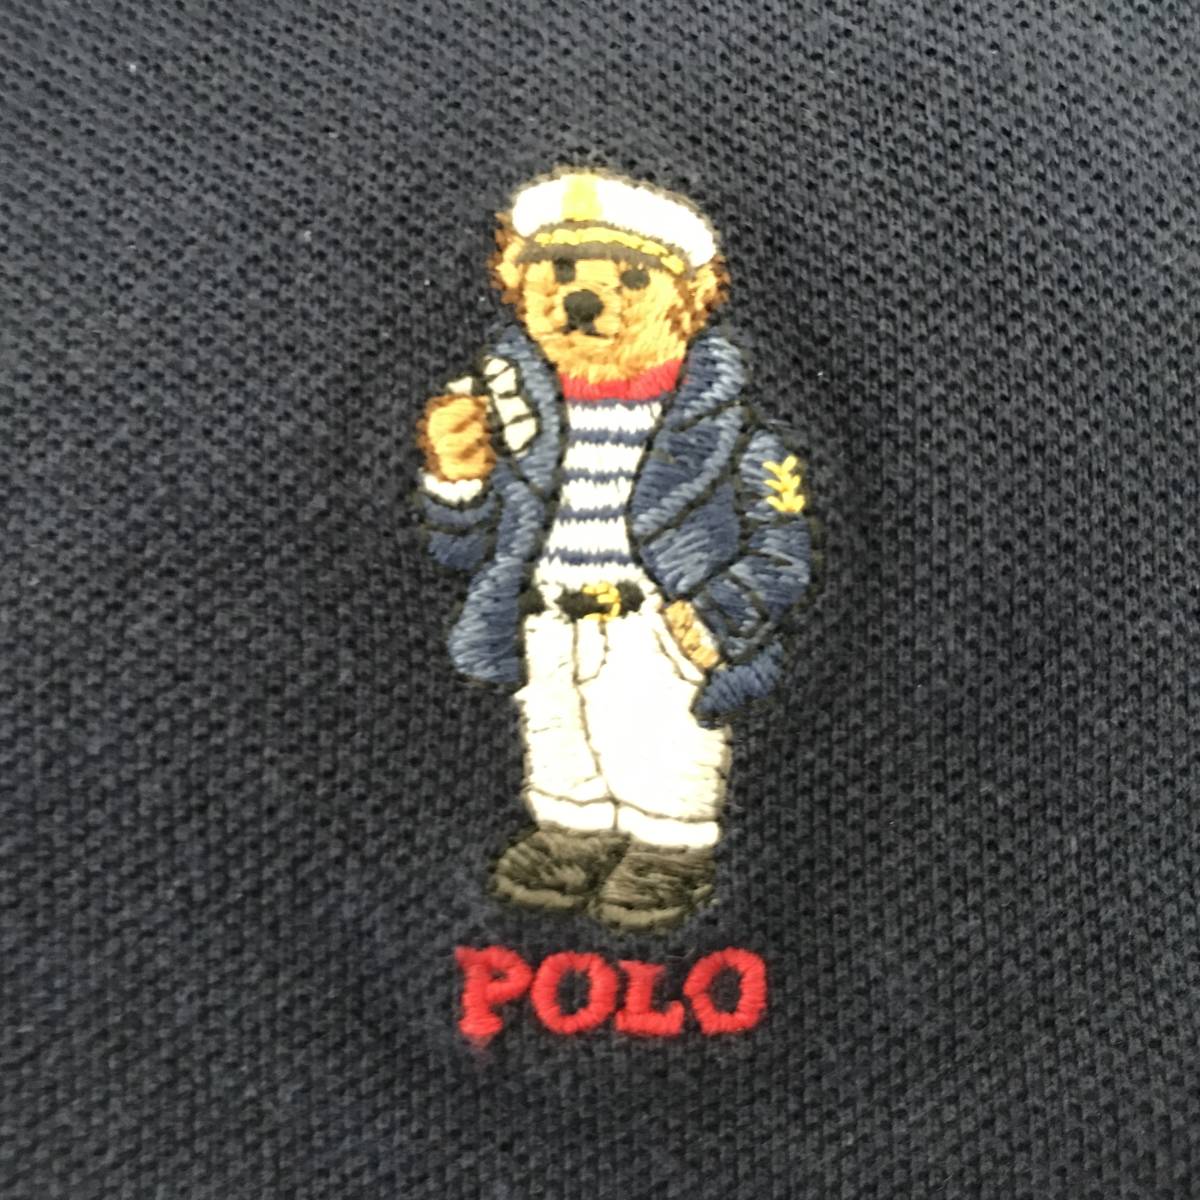 POLO RALPH LAUREN POLO BEAR ポロ ラルフローレン ボーイズサイズ ポロベア刺繍 半袖ポロシャツ 美品 size L/G (14-16)_画像5